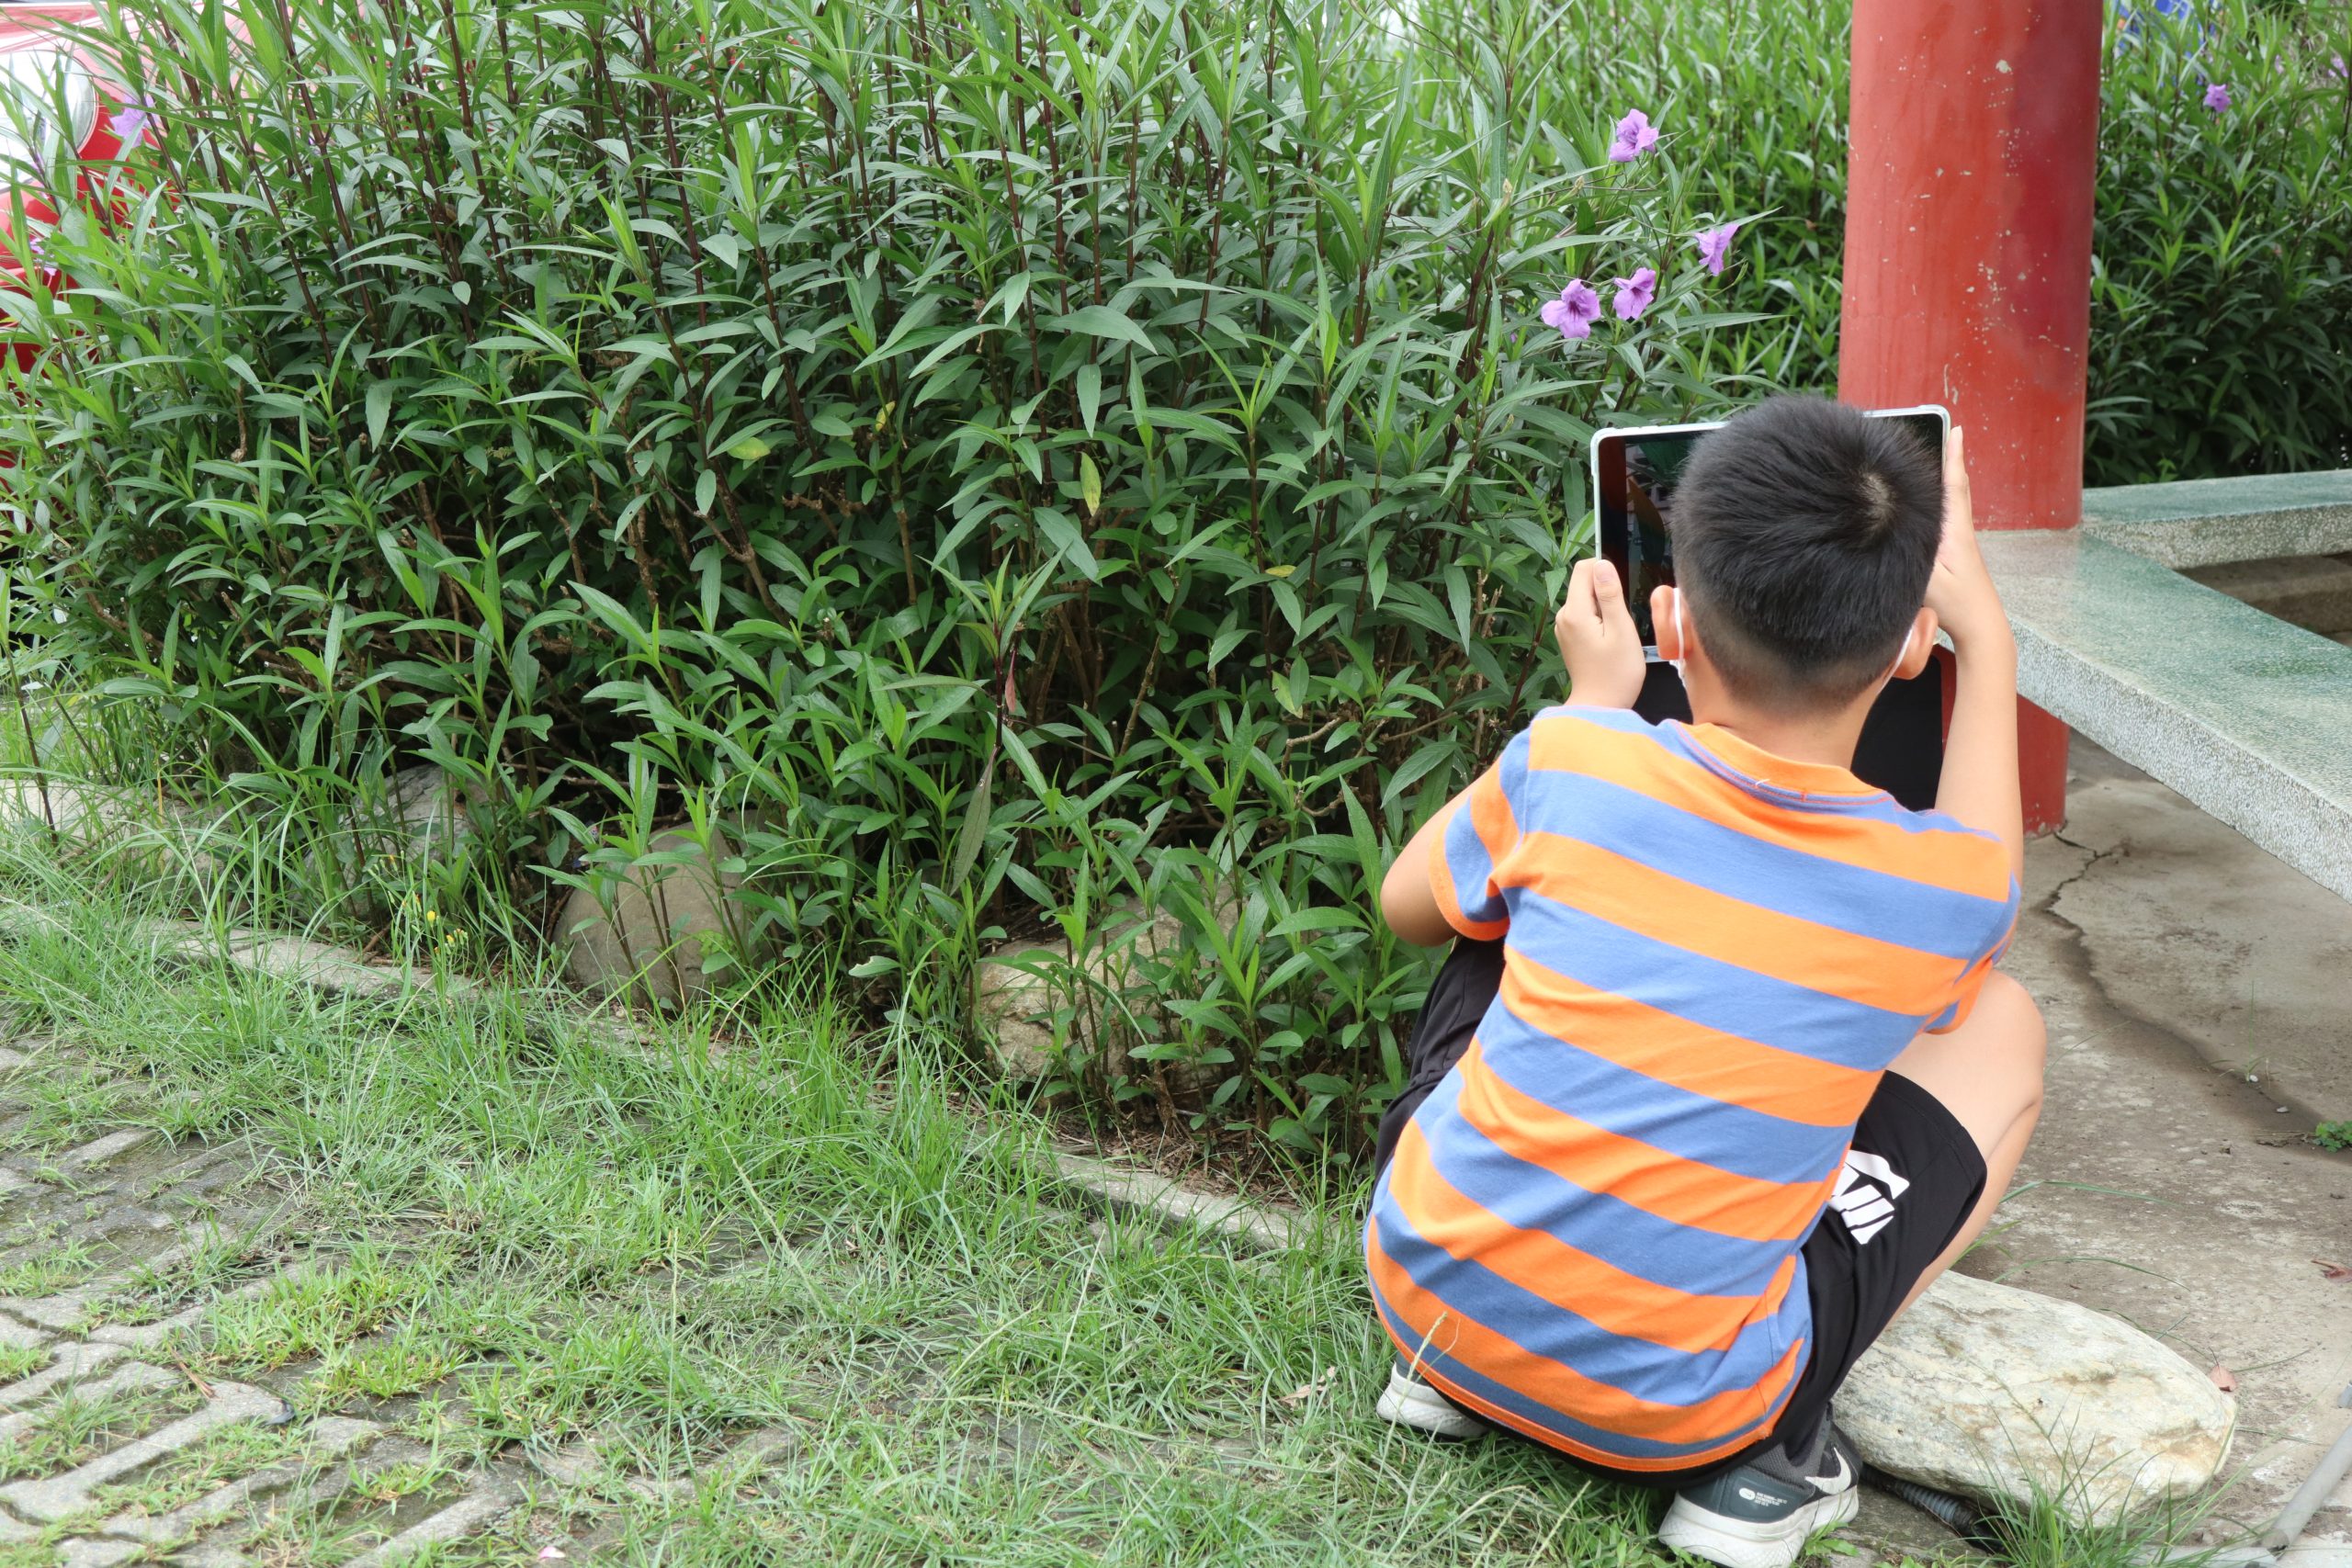 111學年度第二學期於雲林縣斗六市鎮西國民小學施辦自拍拼圖課程實作紀錄系列照片共21張